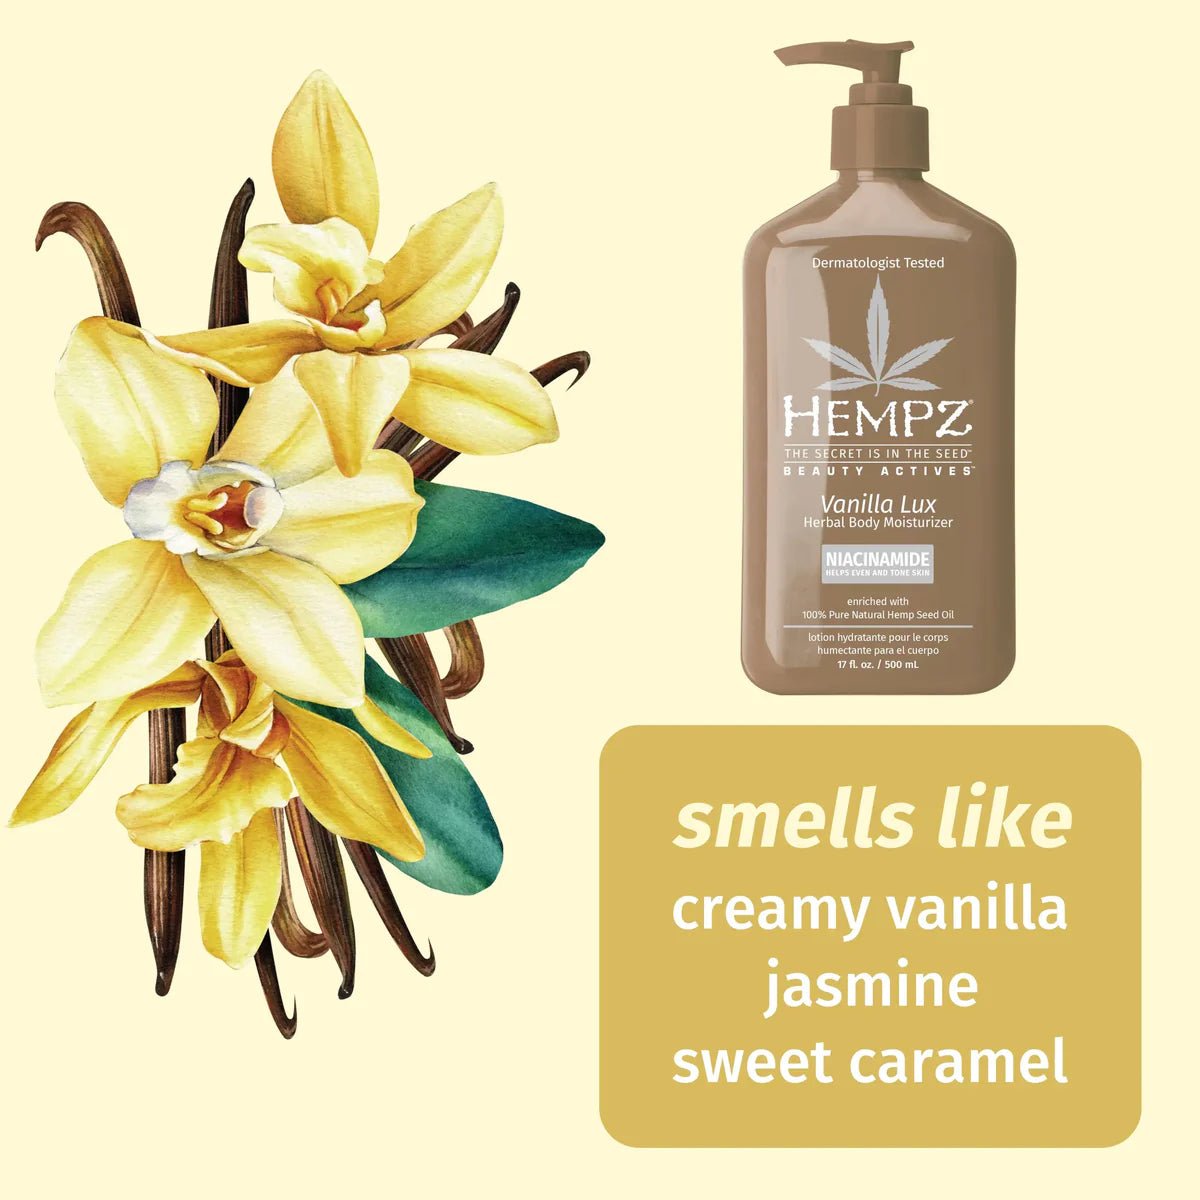 Vanilla Lux Herbal Body Moisturizer with Niacinamide - Lavender Hills BeautyHempz